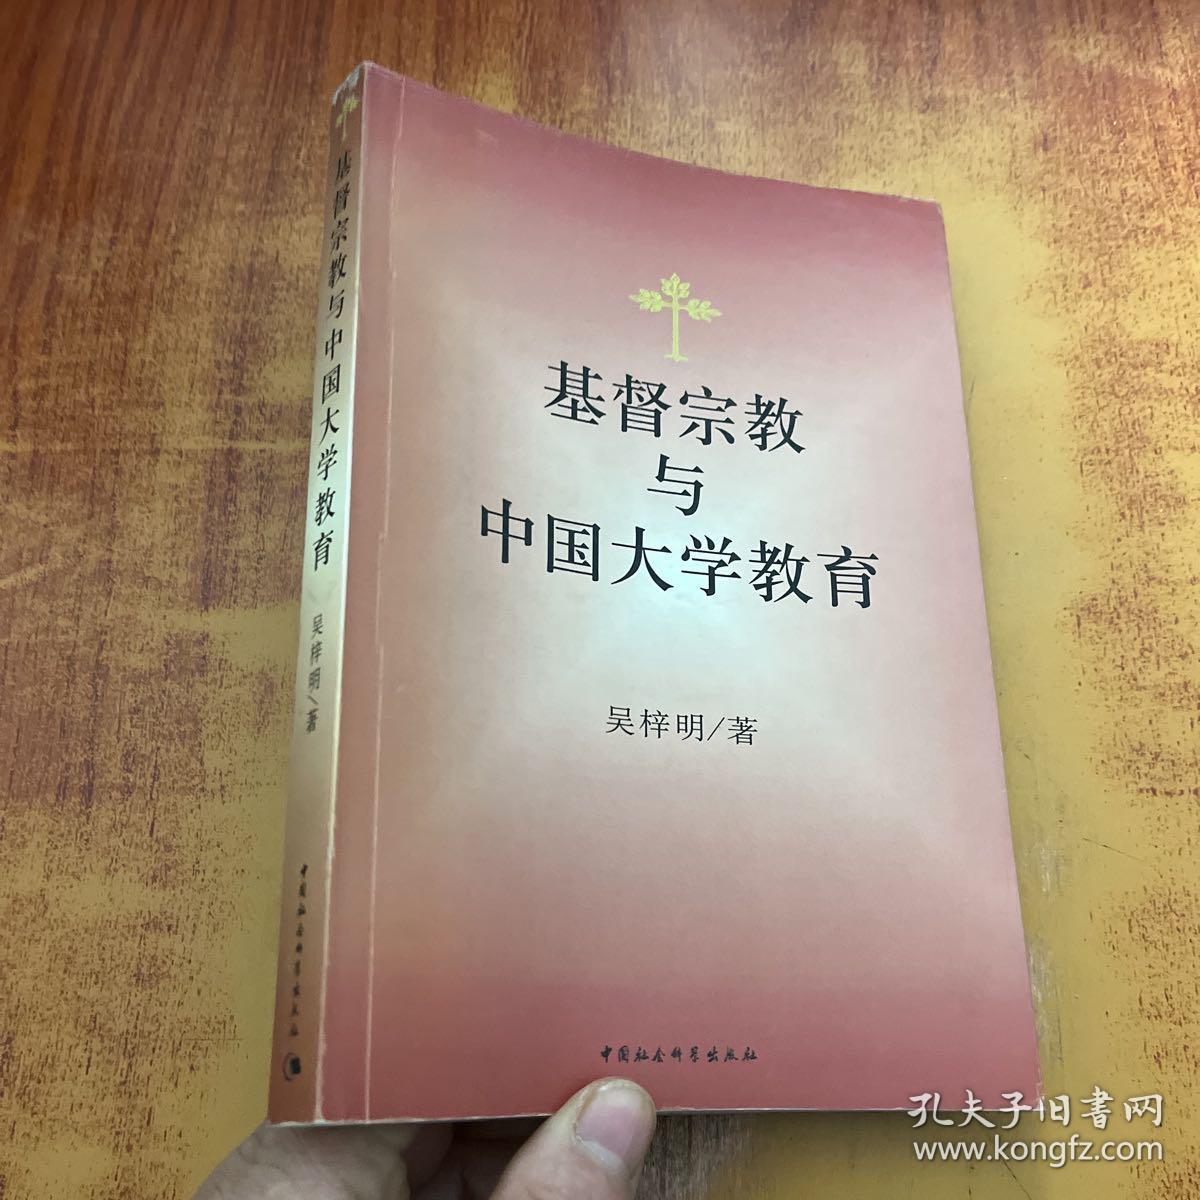 基督宗教与中国大学教育